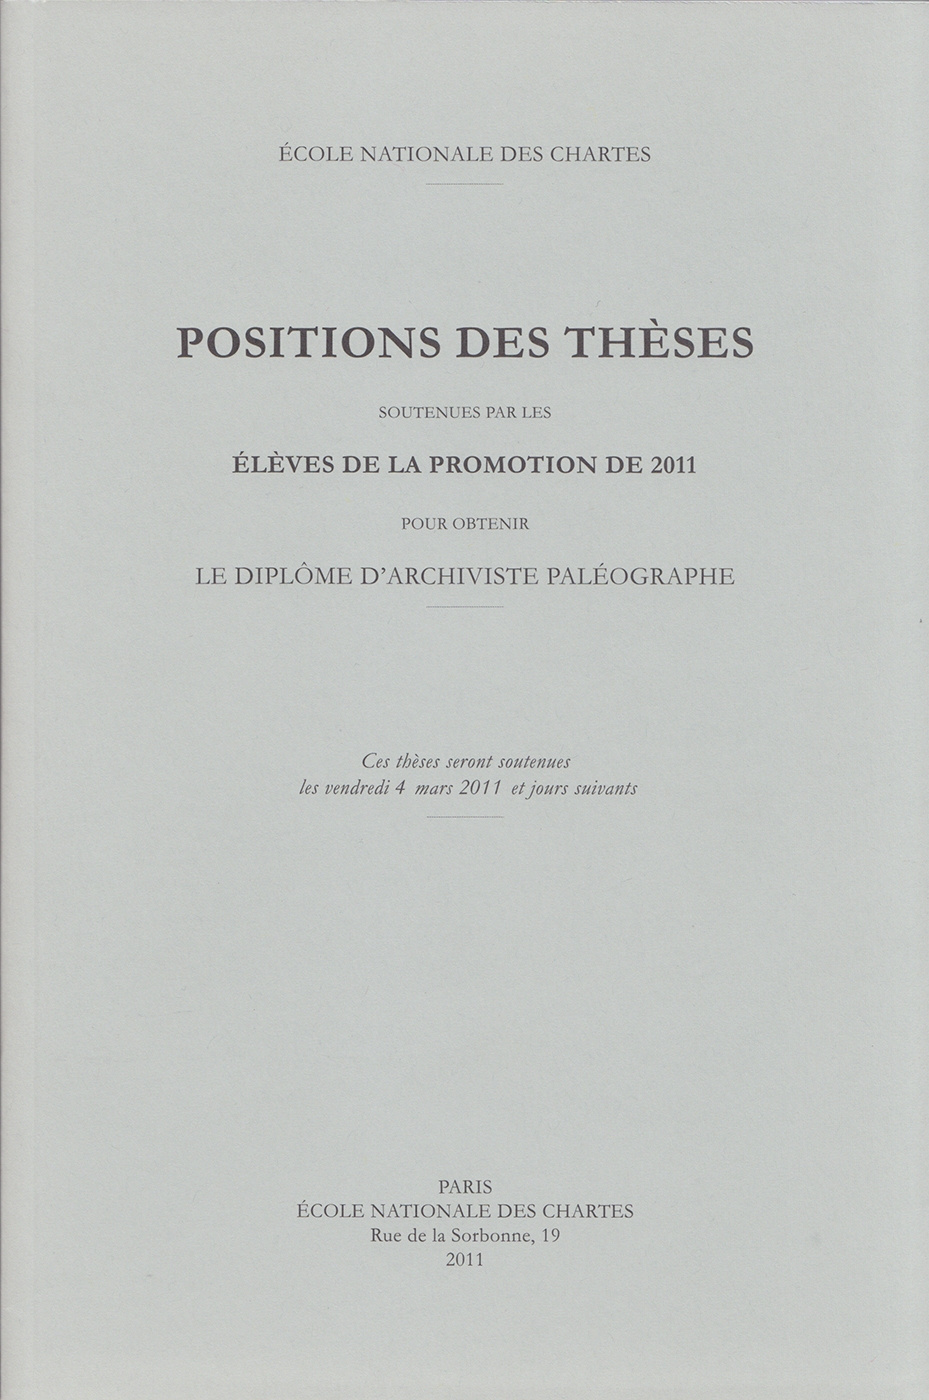 Positions des thèses 2011